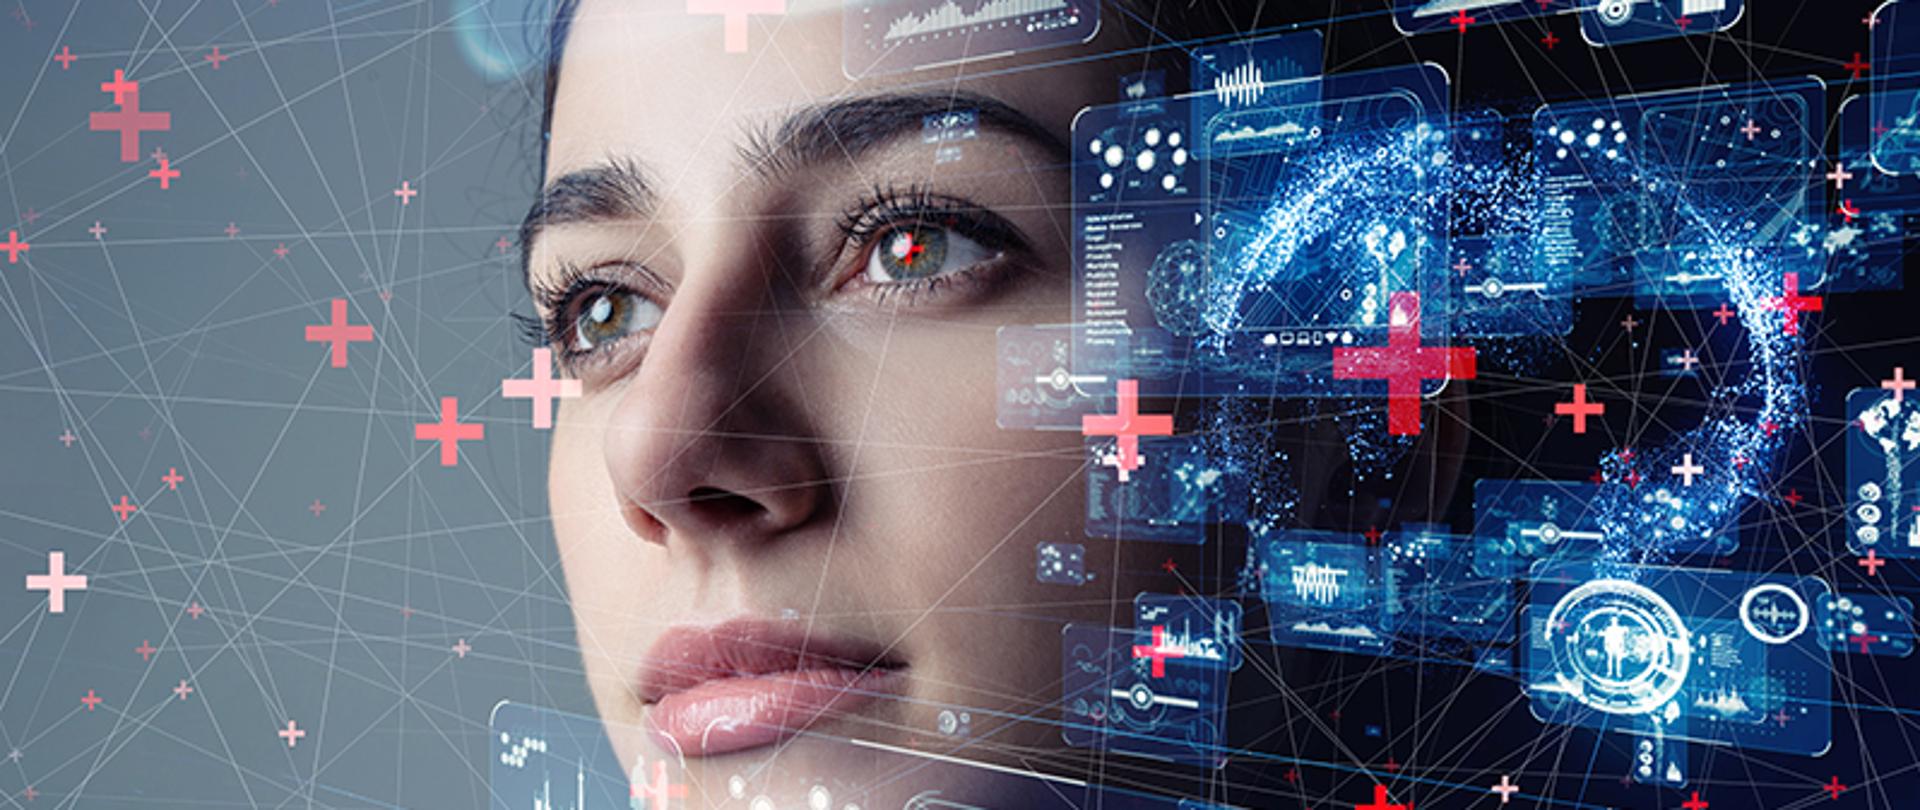 grafika symboliczna - zdjęcie twarzy kobiety na którym narysowane są linie, znaki plus i zrzuty ekranowe z komputerów